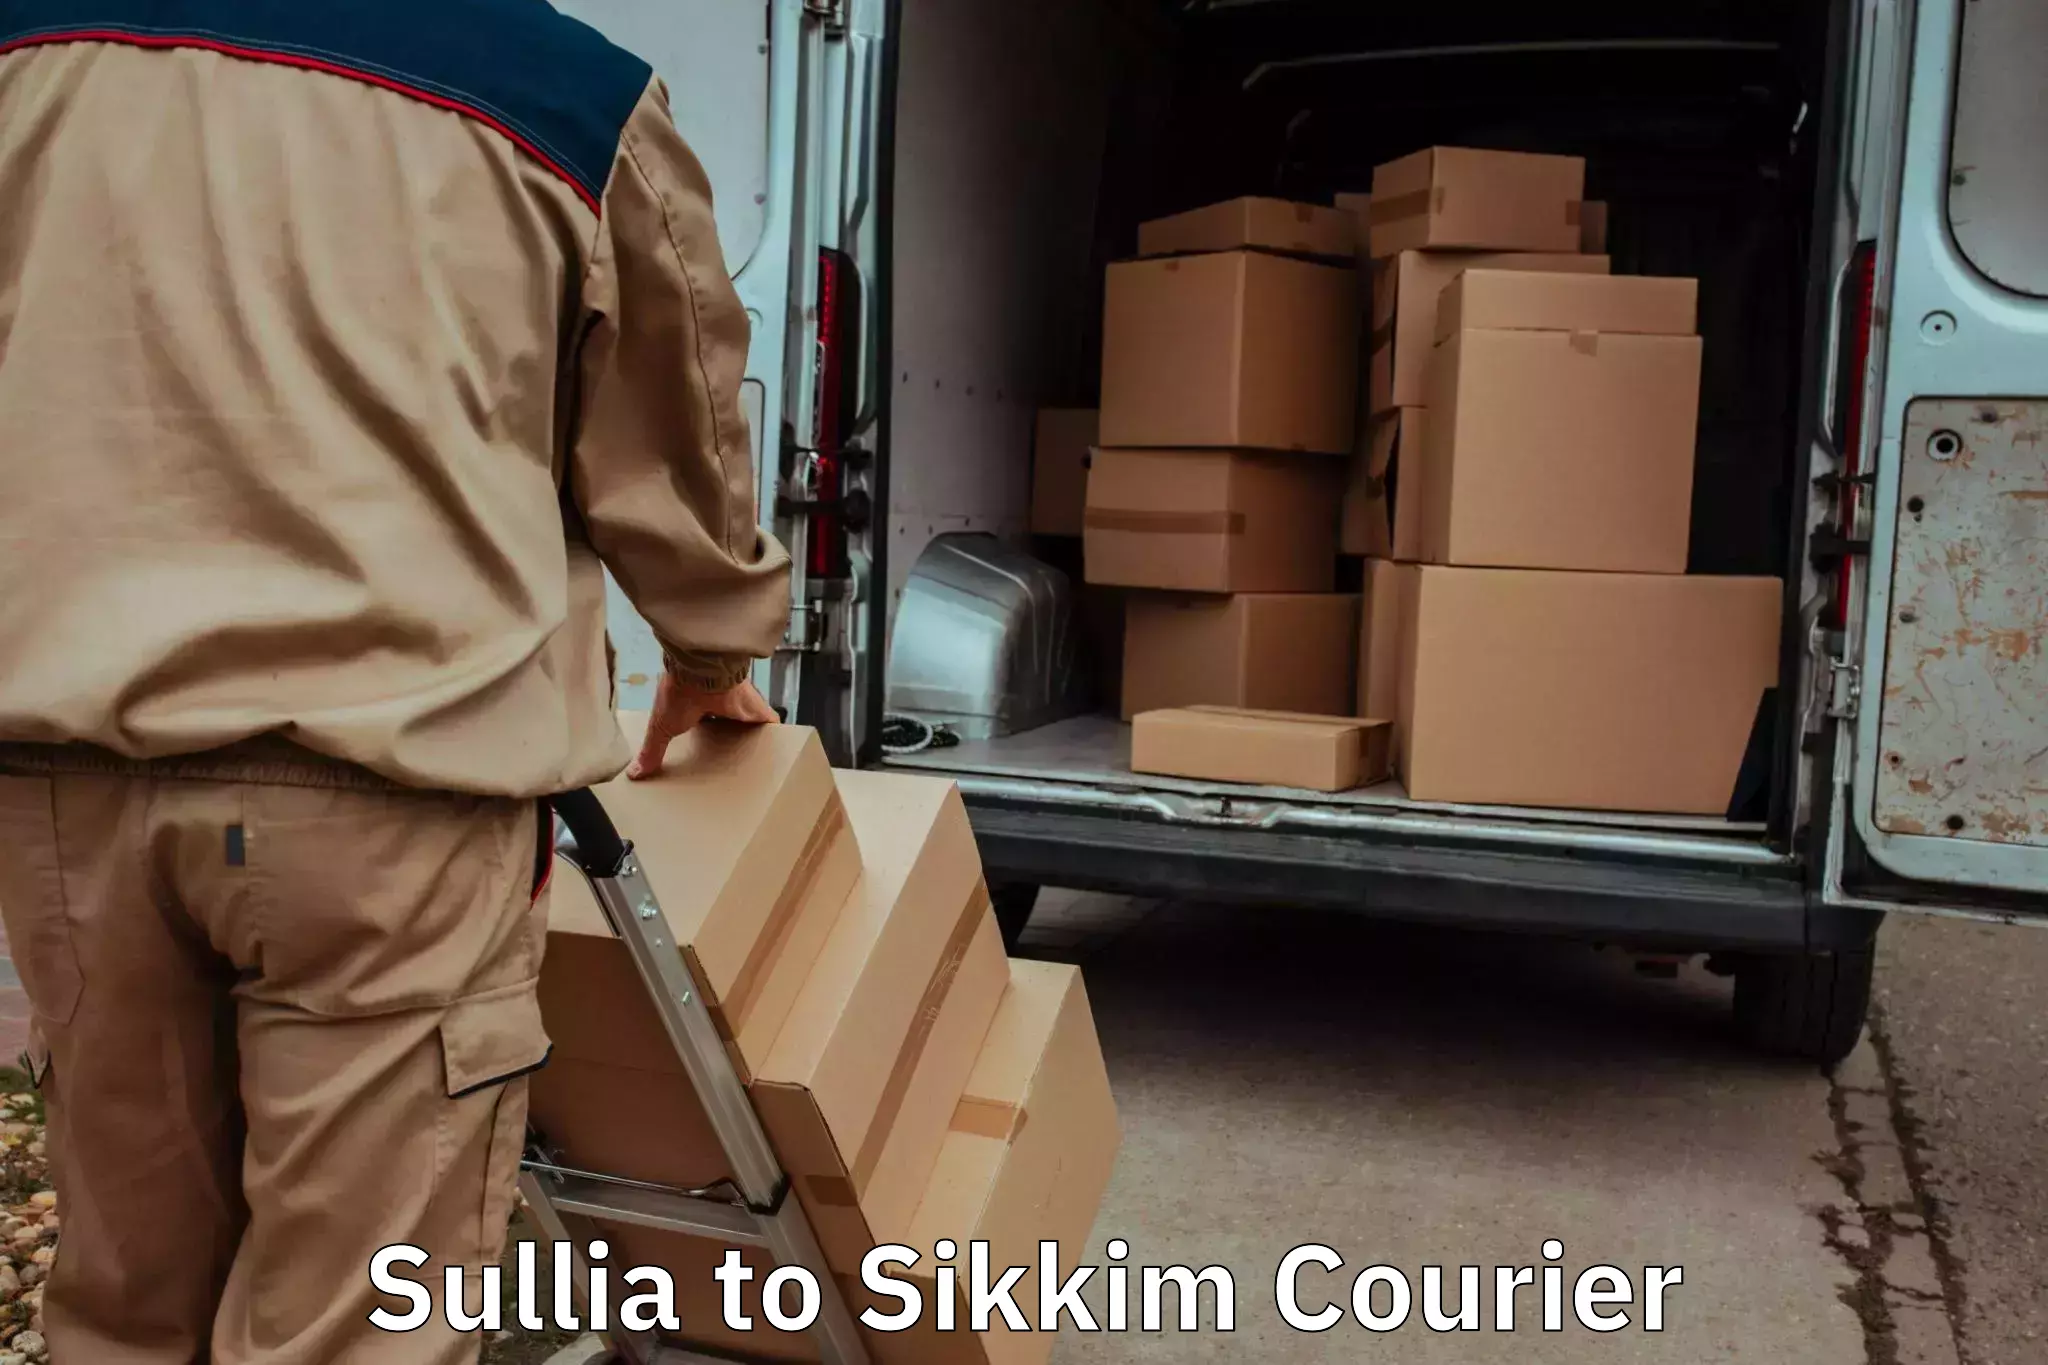 Furniture transport professionals Sullia to Mangan